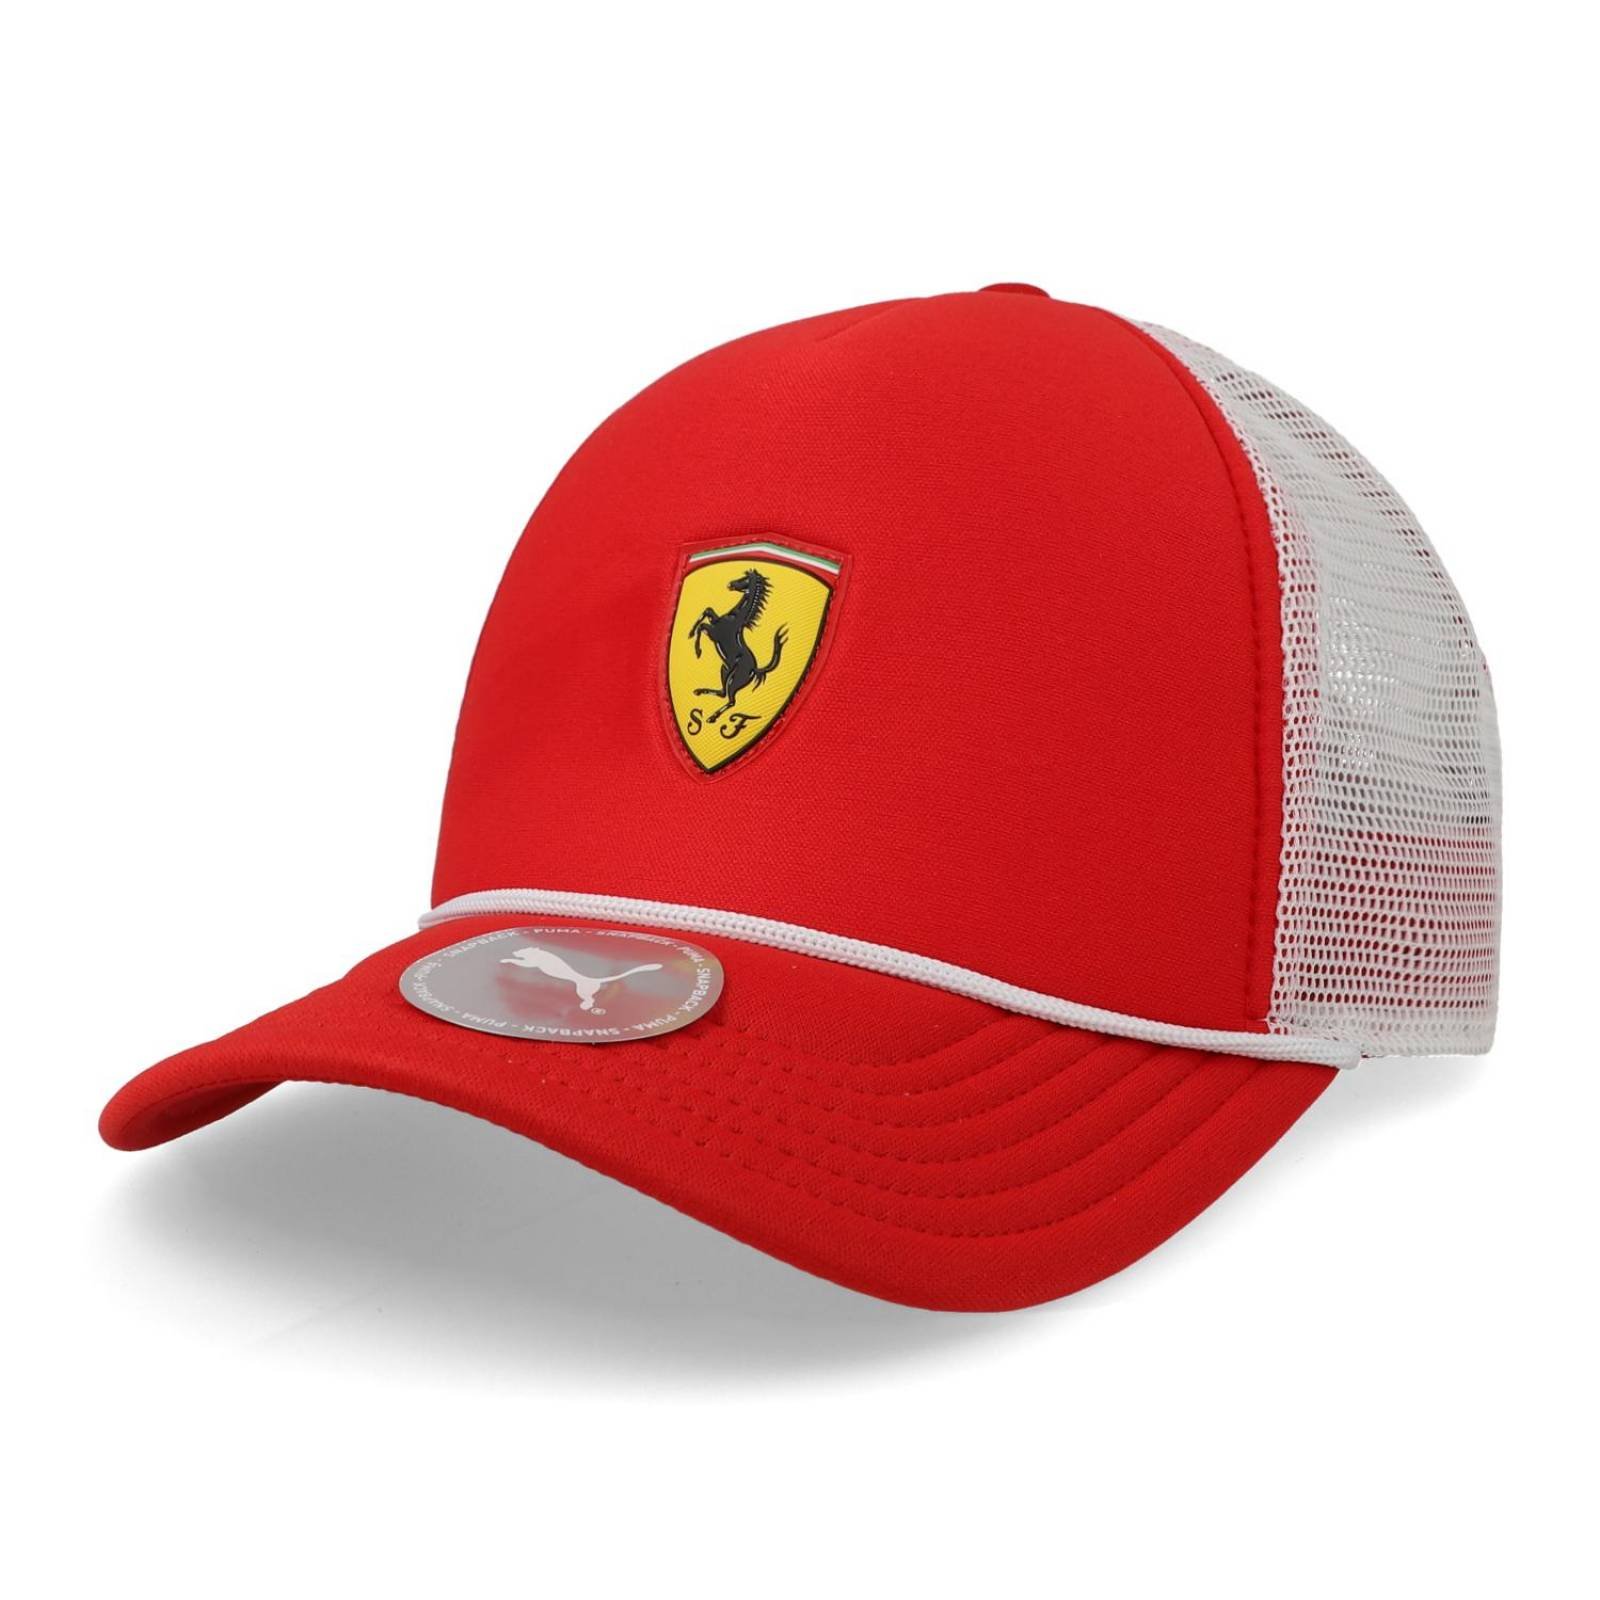  Ferrari Scuderia - Mercancía oficial de Fórmula 1 - Gorra Tech  - Rojo - Talla única, Rojo - : Automotriz